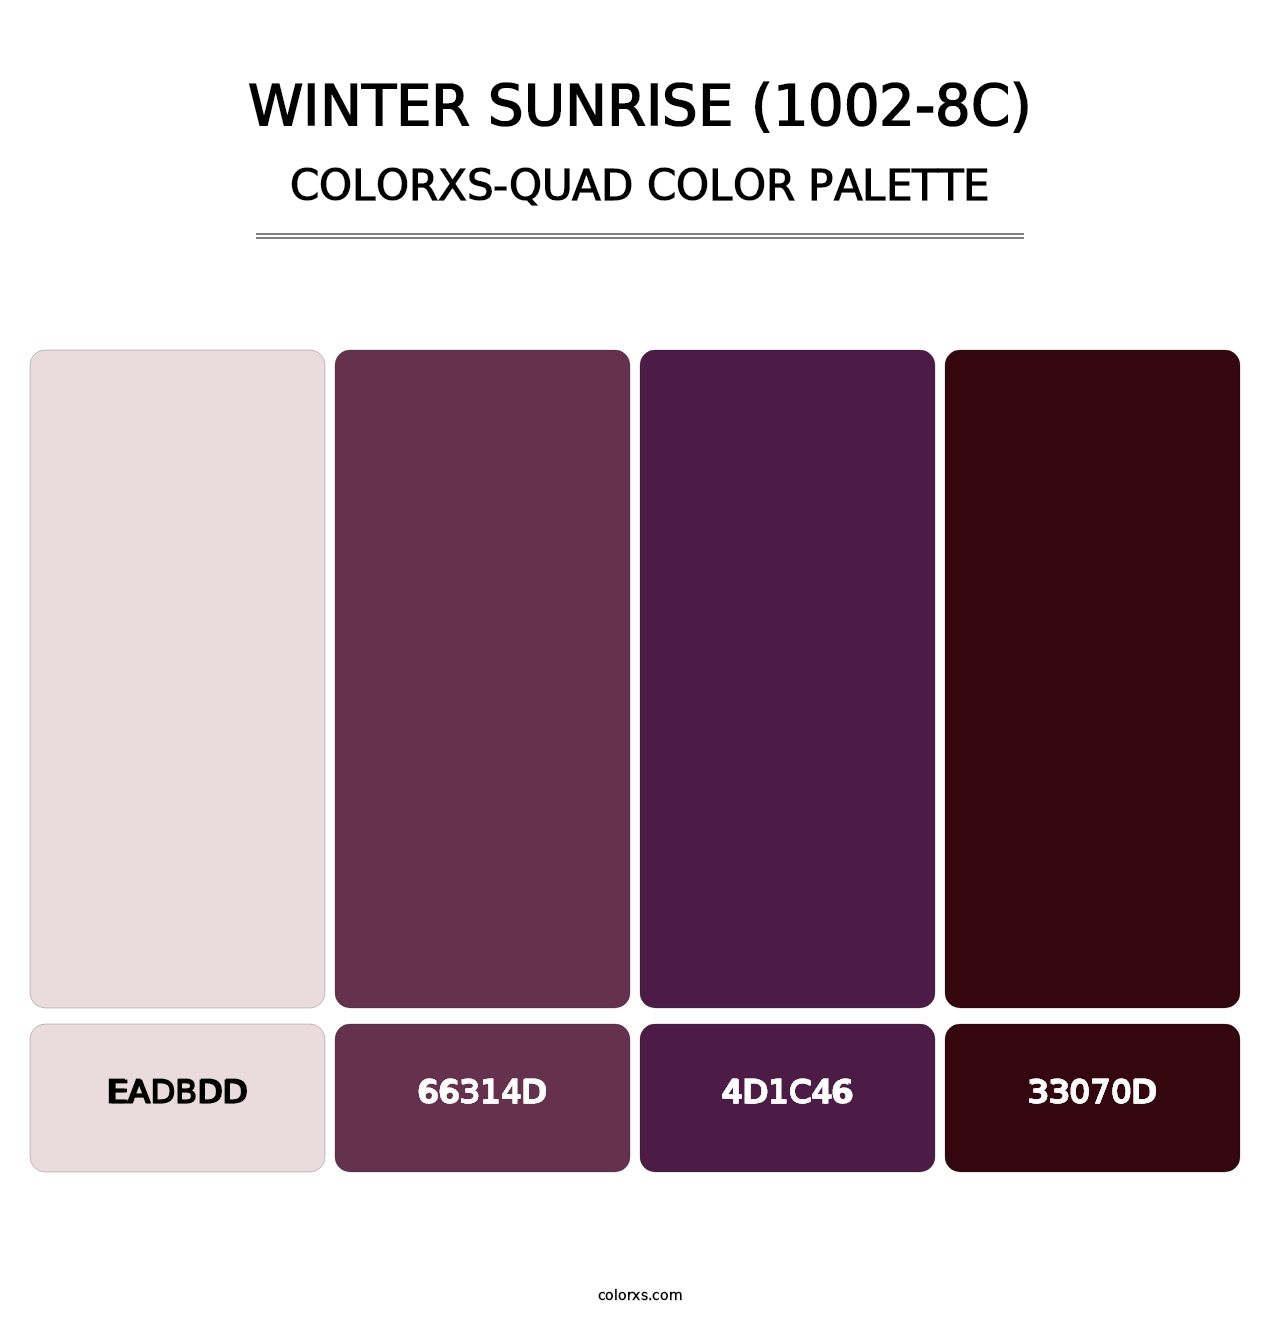 Winter Sunrise (1002-8C) - Colorxs Quad Palette